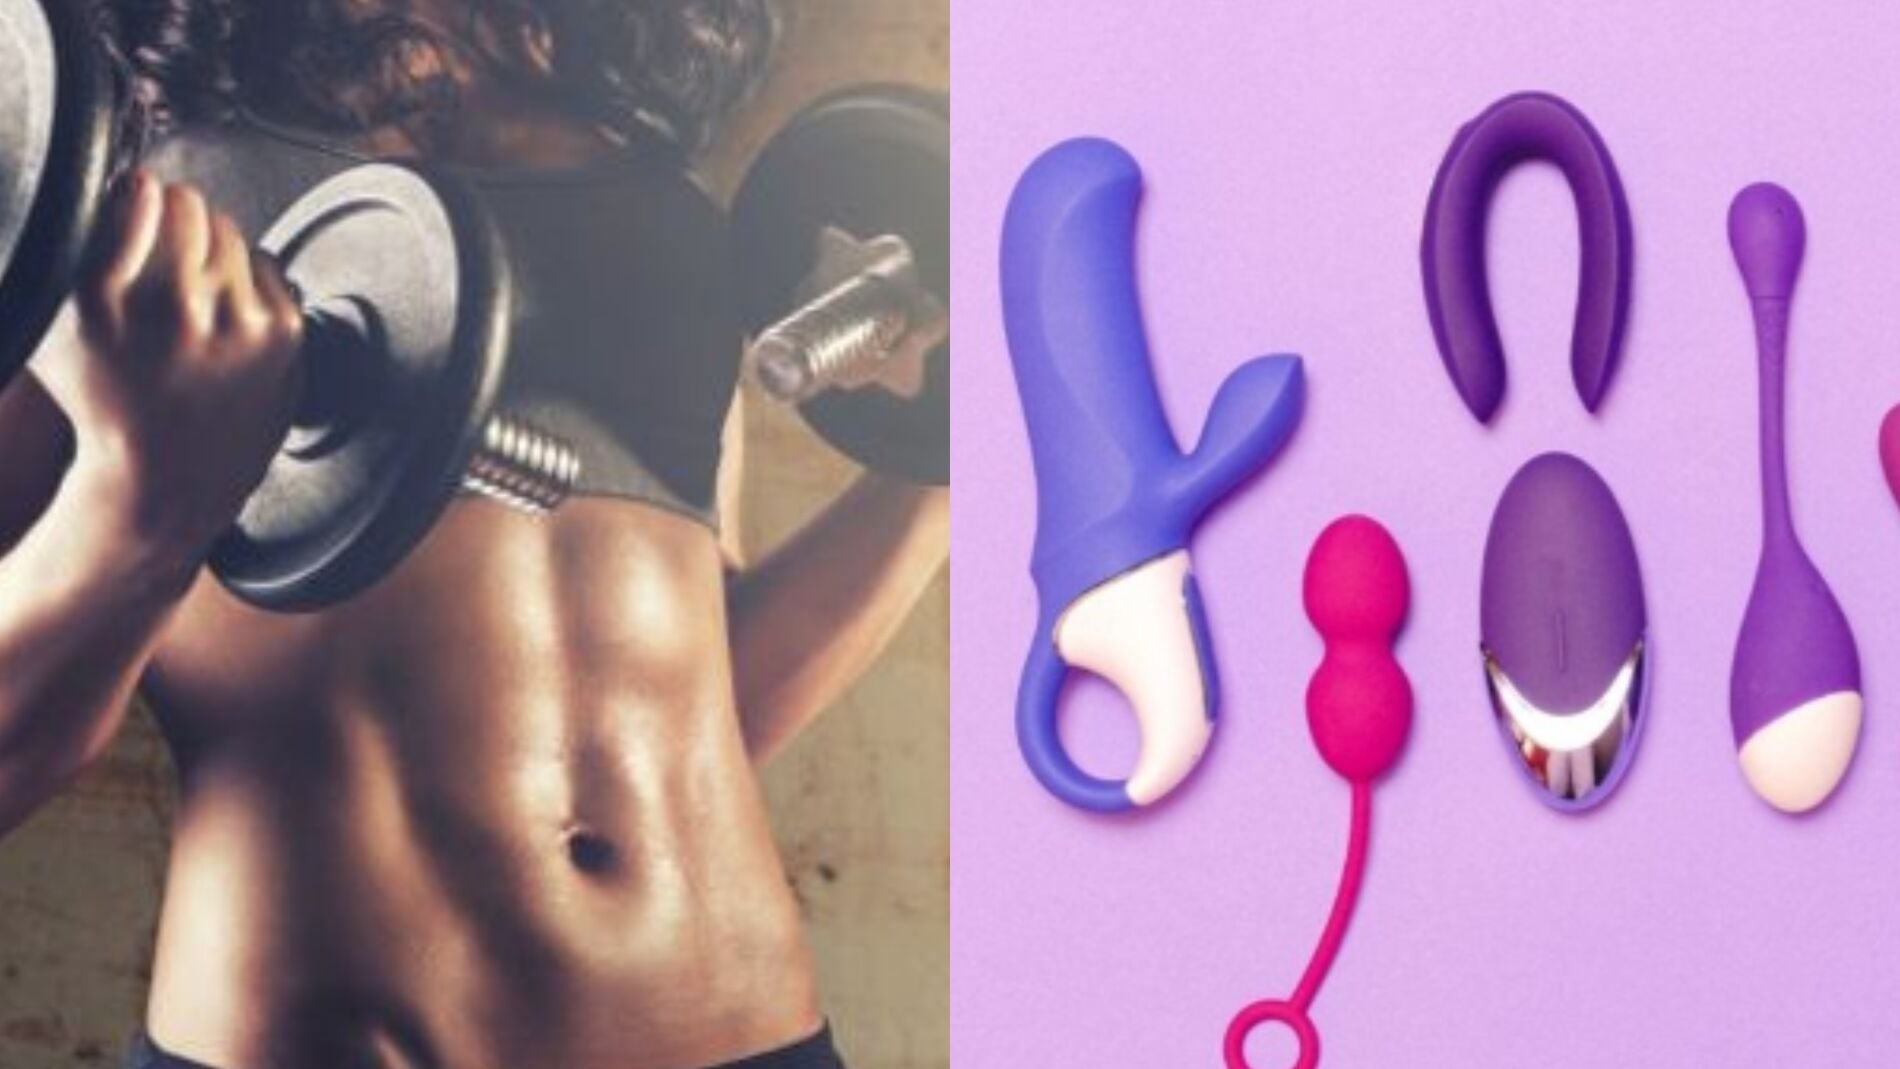 La razón por la que deberías usar juguetes sexuales para aumentar tu rendimiento deportivo, según la ciencia imagen